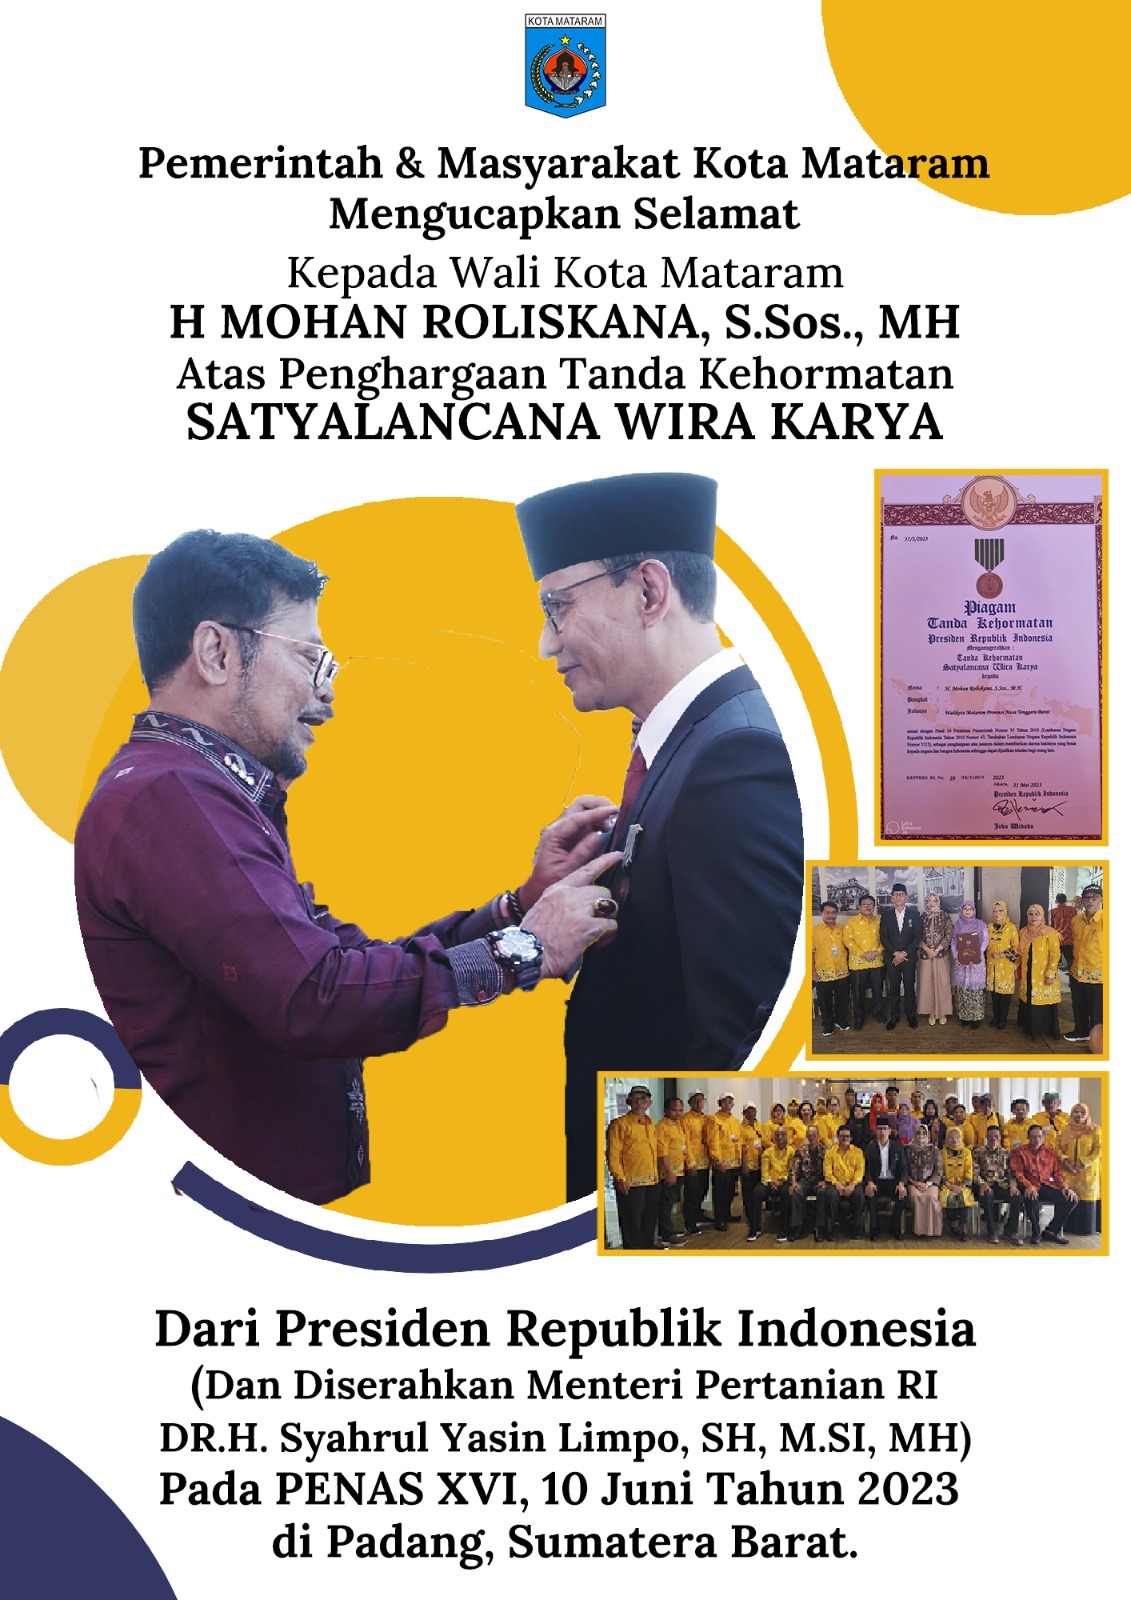 Selamat Kepada Wali Kota Mataram atas Penghargaan Tanda Kehormatan SATYALANCANA WIRA KARYA